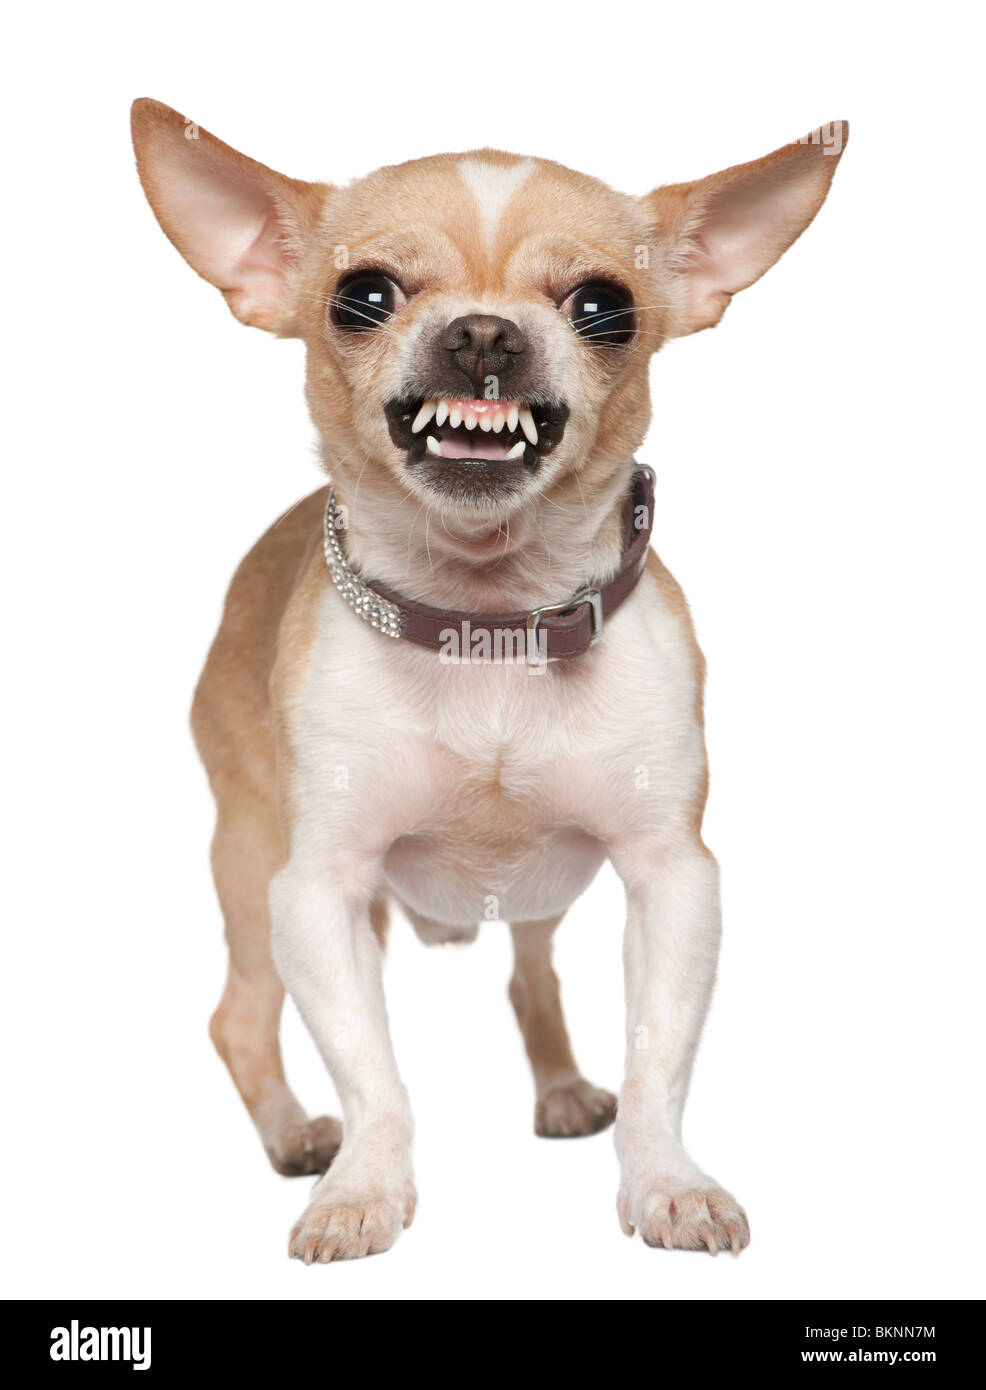 Arrabbiato Chihuahua ringhiando, 2 anni, di fronte a uno sfondo bianco Foto Stock